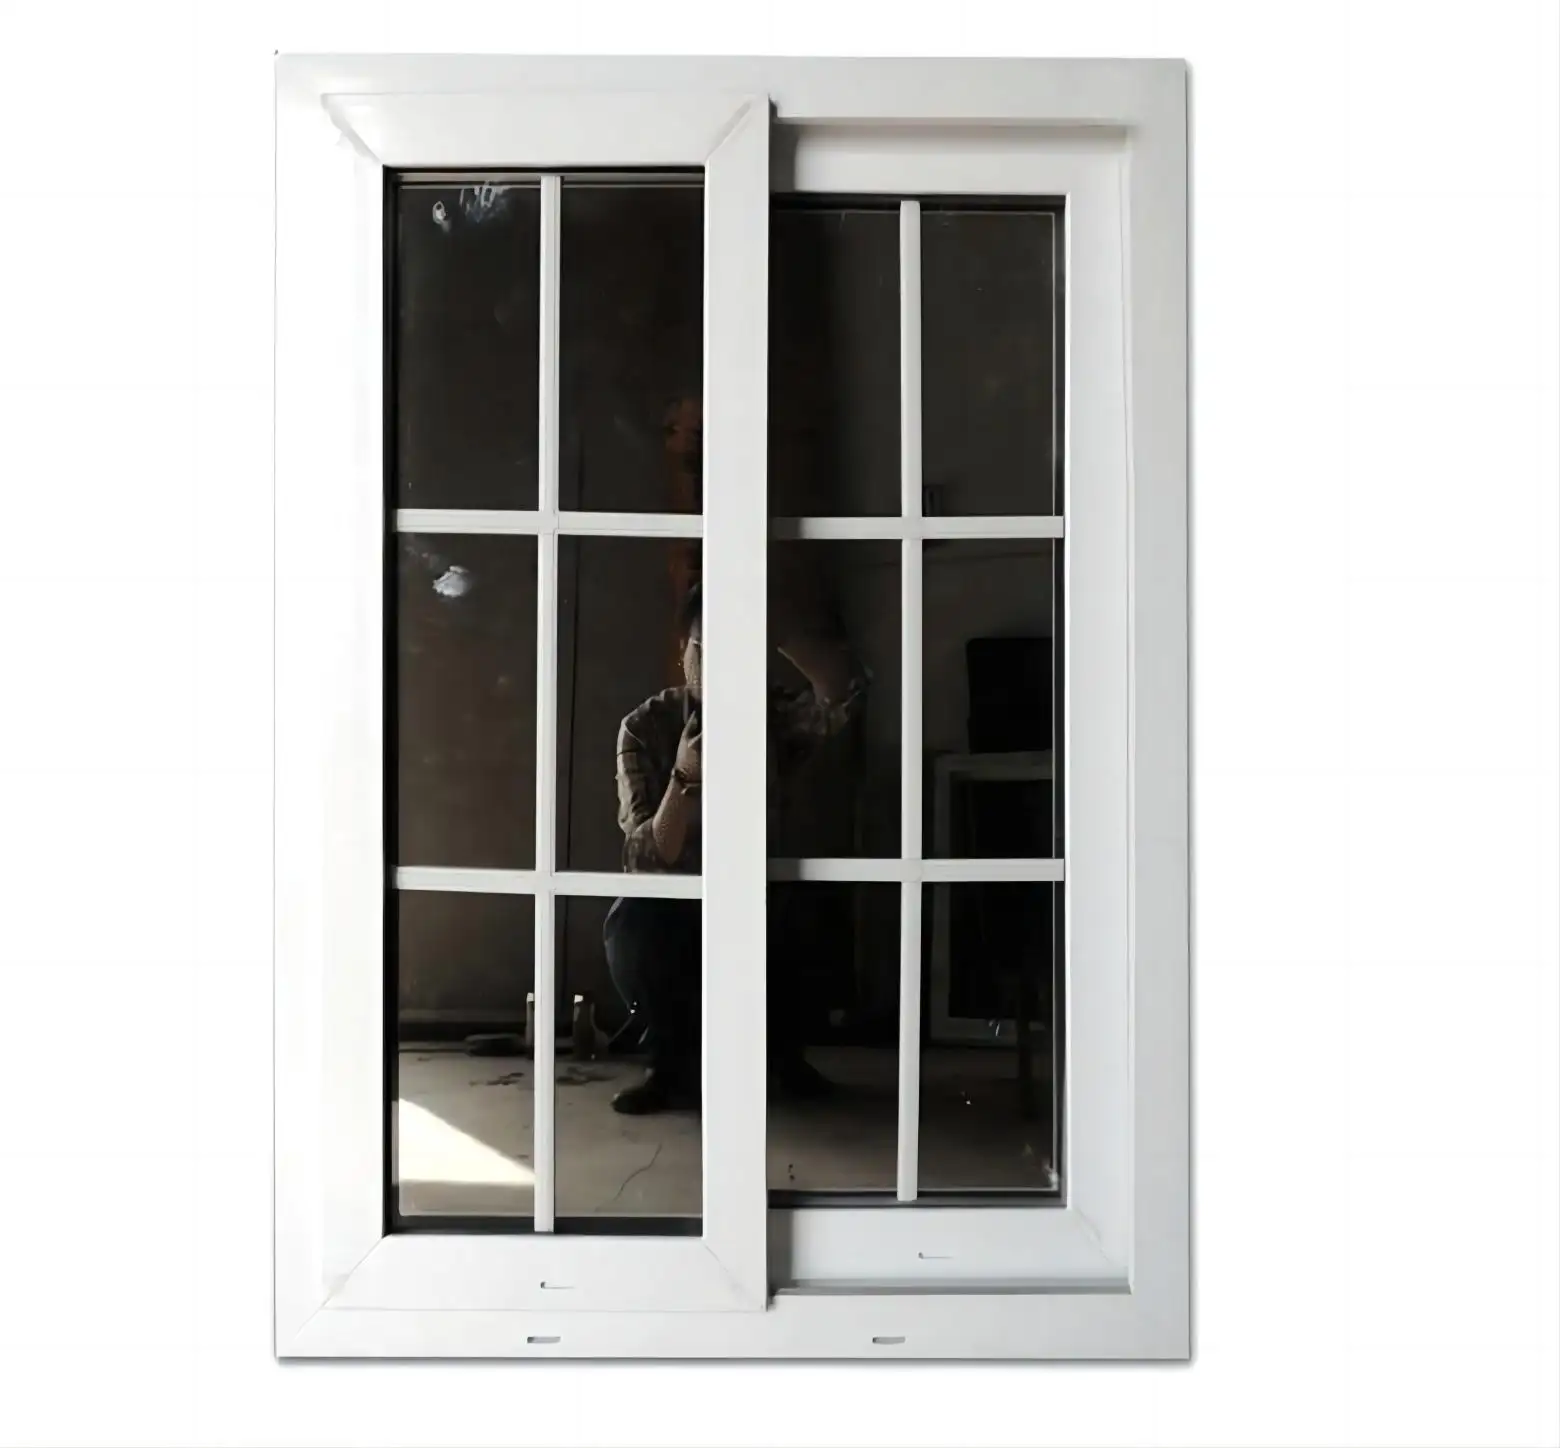 Fenêtres pvc double vitrage de style européen prix upvc/fenêtres coulissantes en verre de vinyle pour la maison